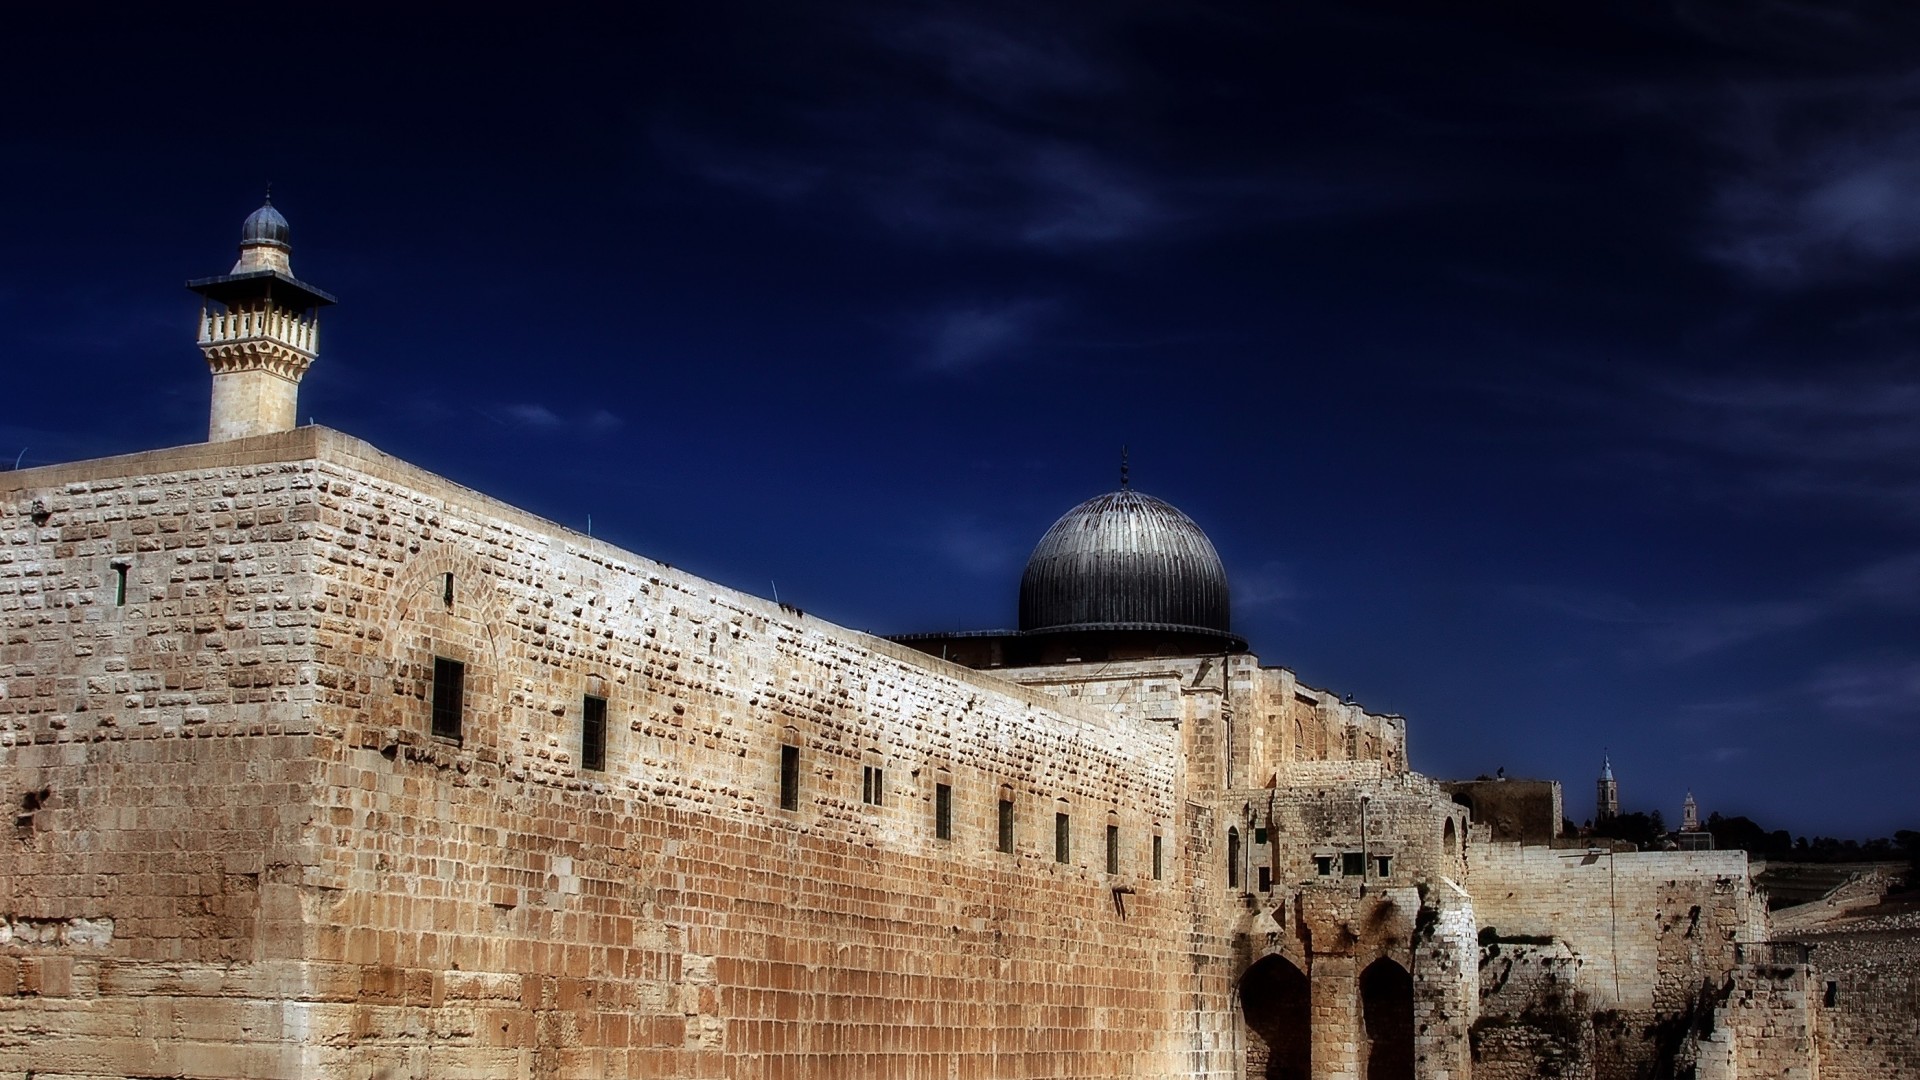 israel wallpaper hd,himmel,heilige orte,die architektur,gebäude,befestigung